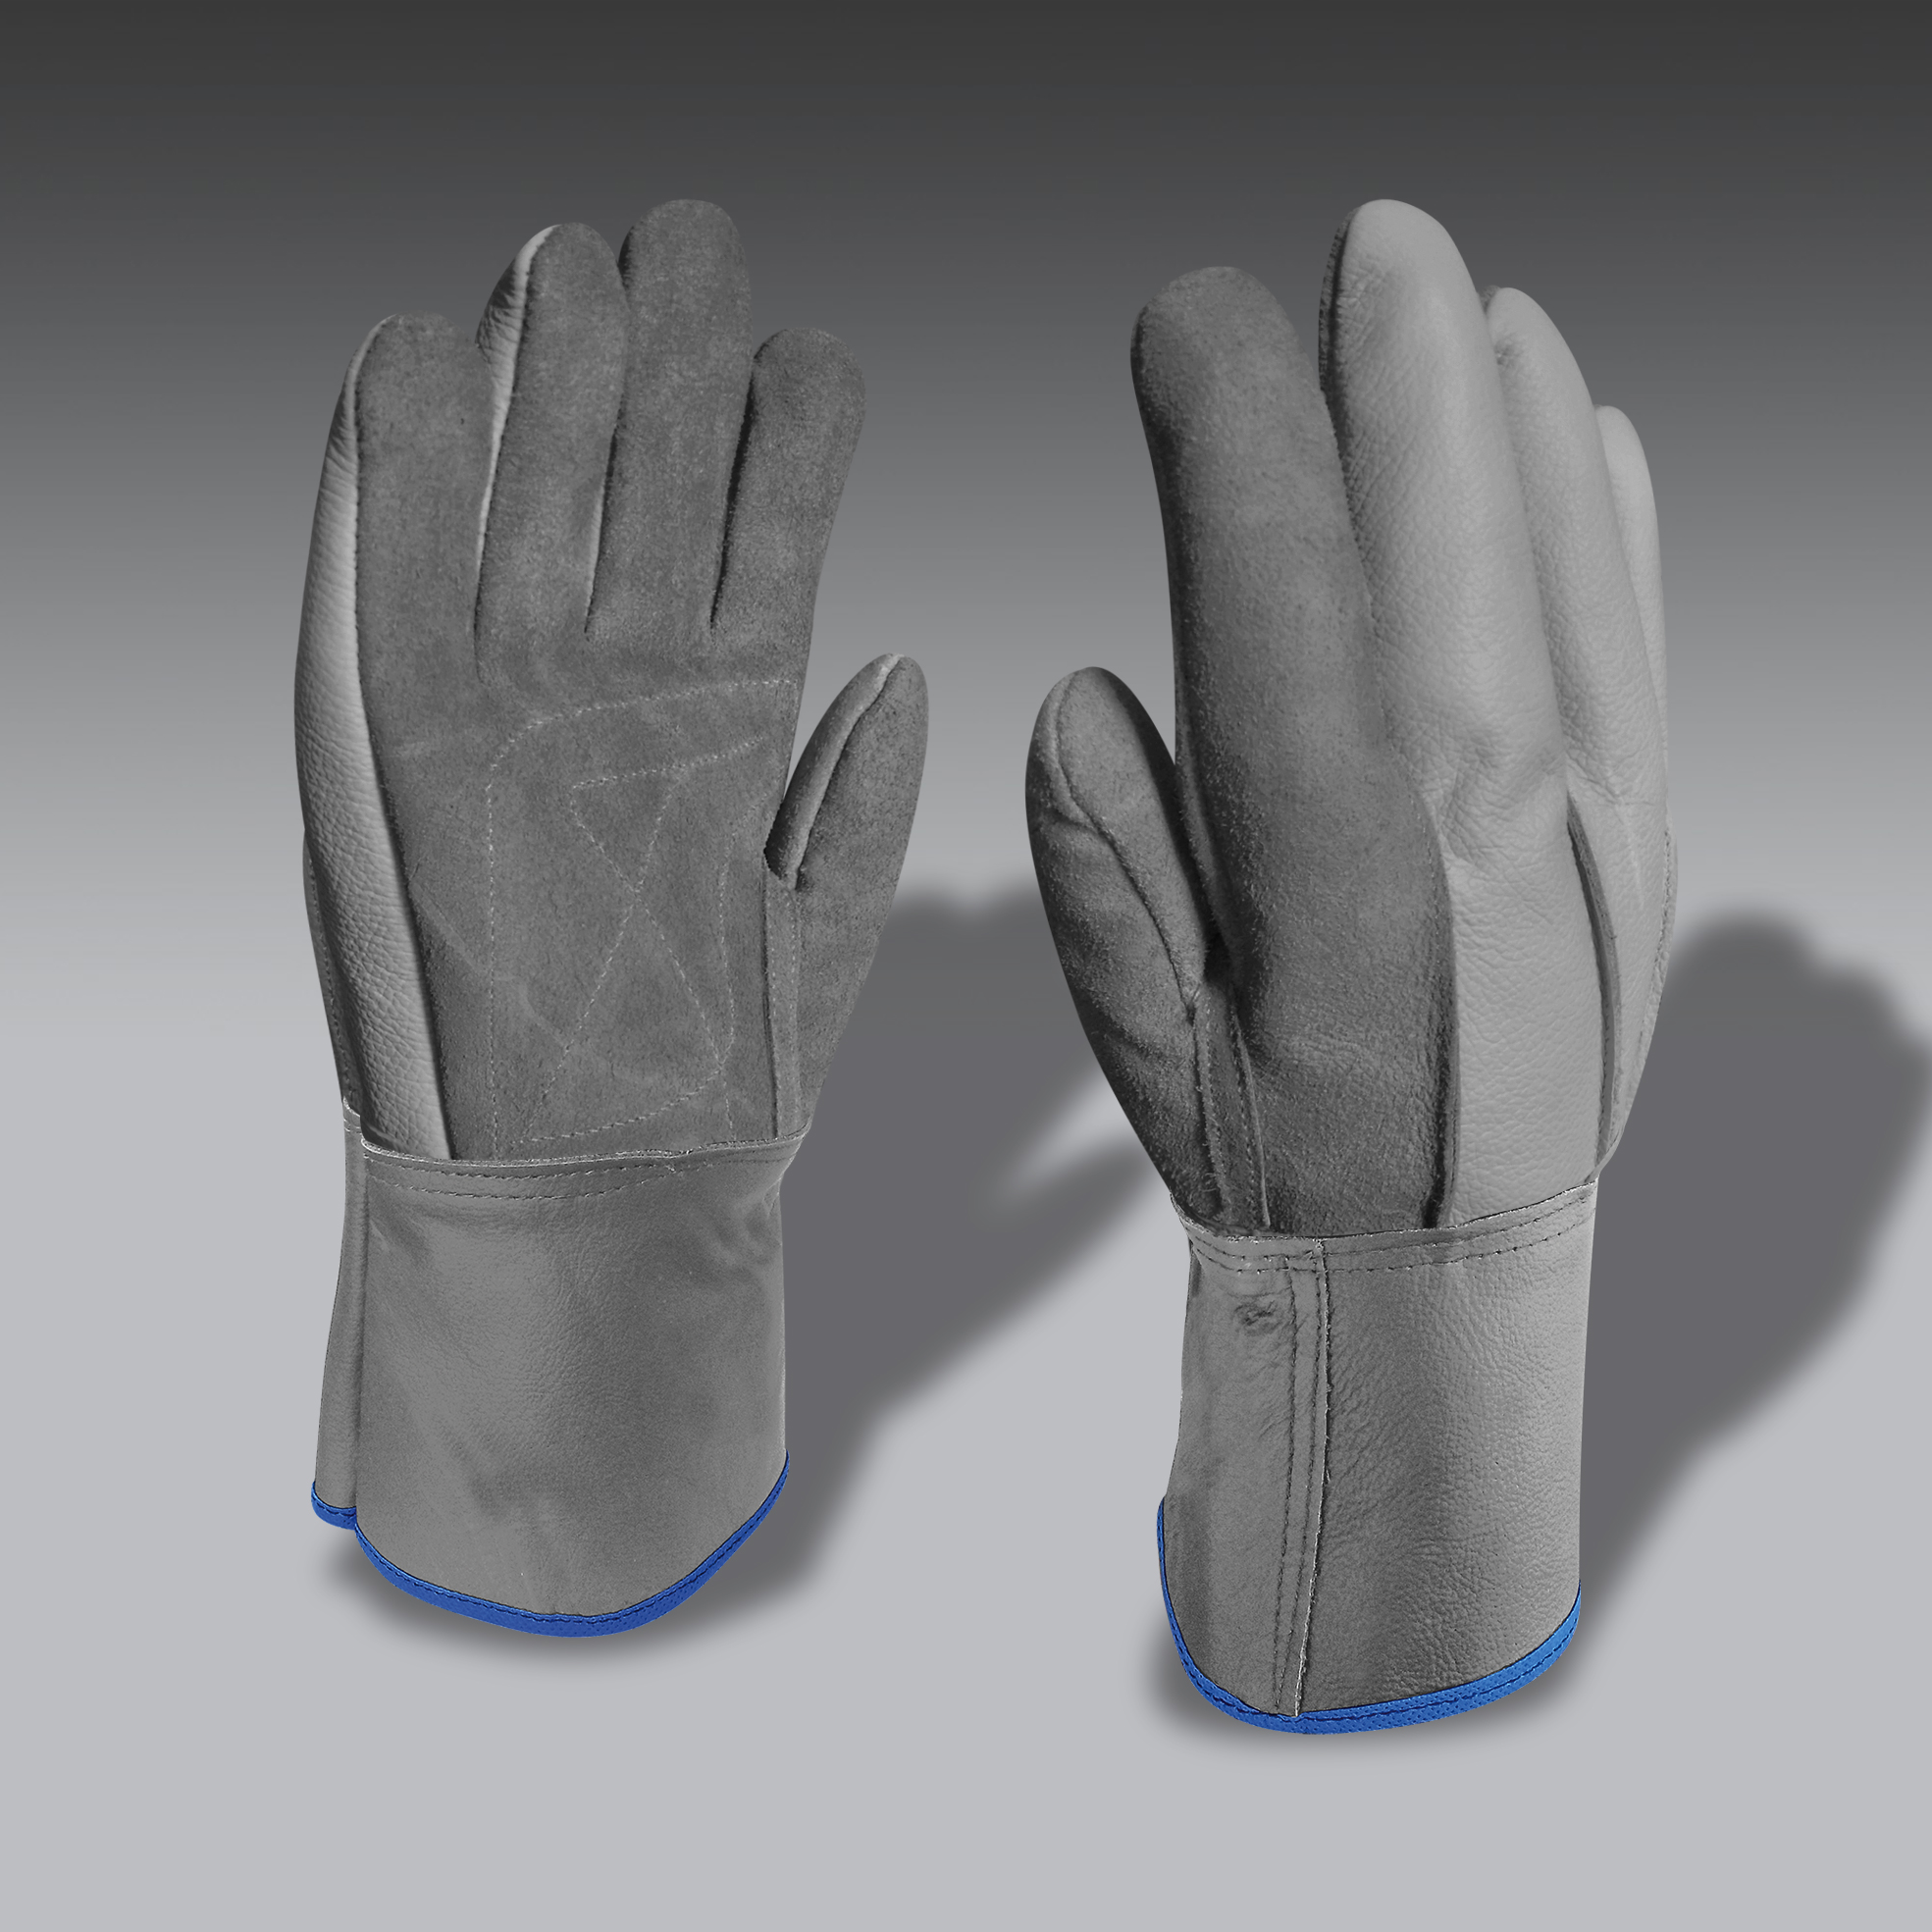 guantes para la seguridad industrial modelo CarEco 06 guantes de seguridad industrial modelo CarEco 06